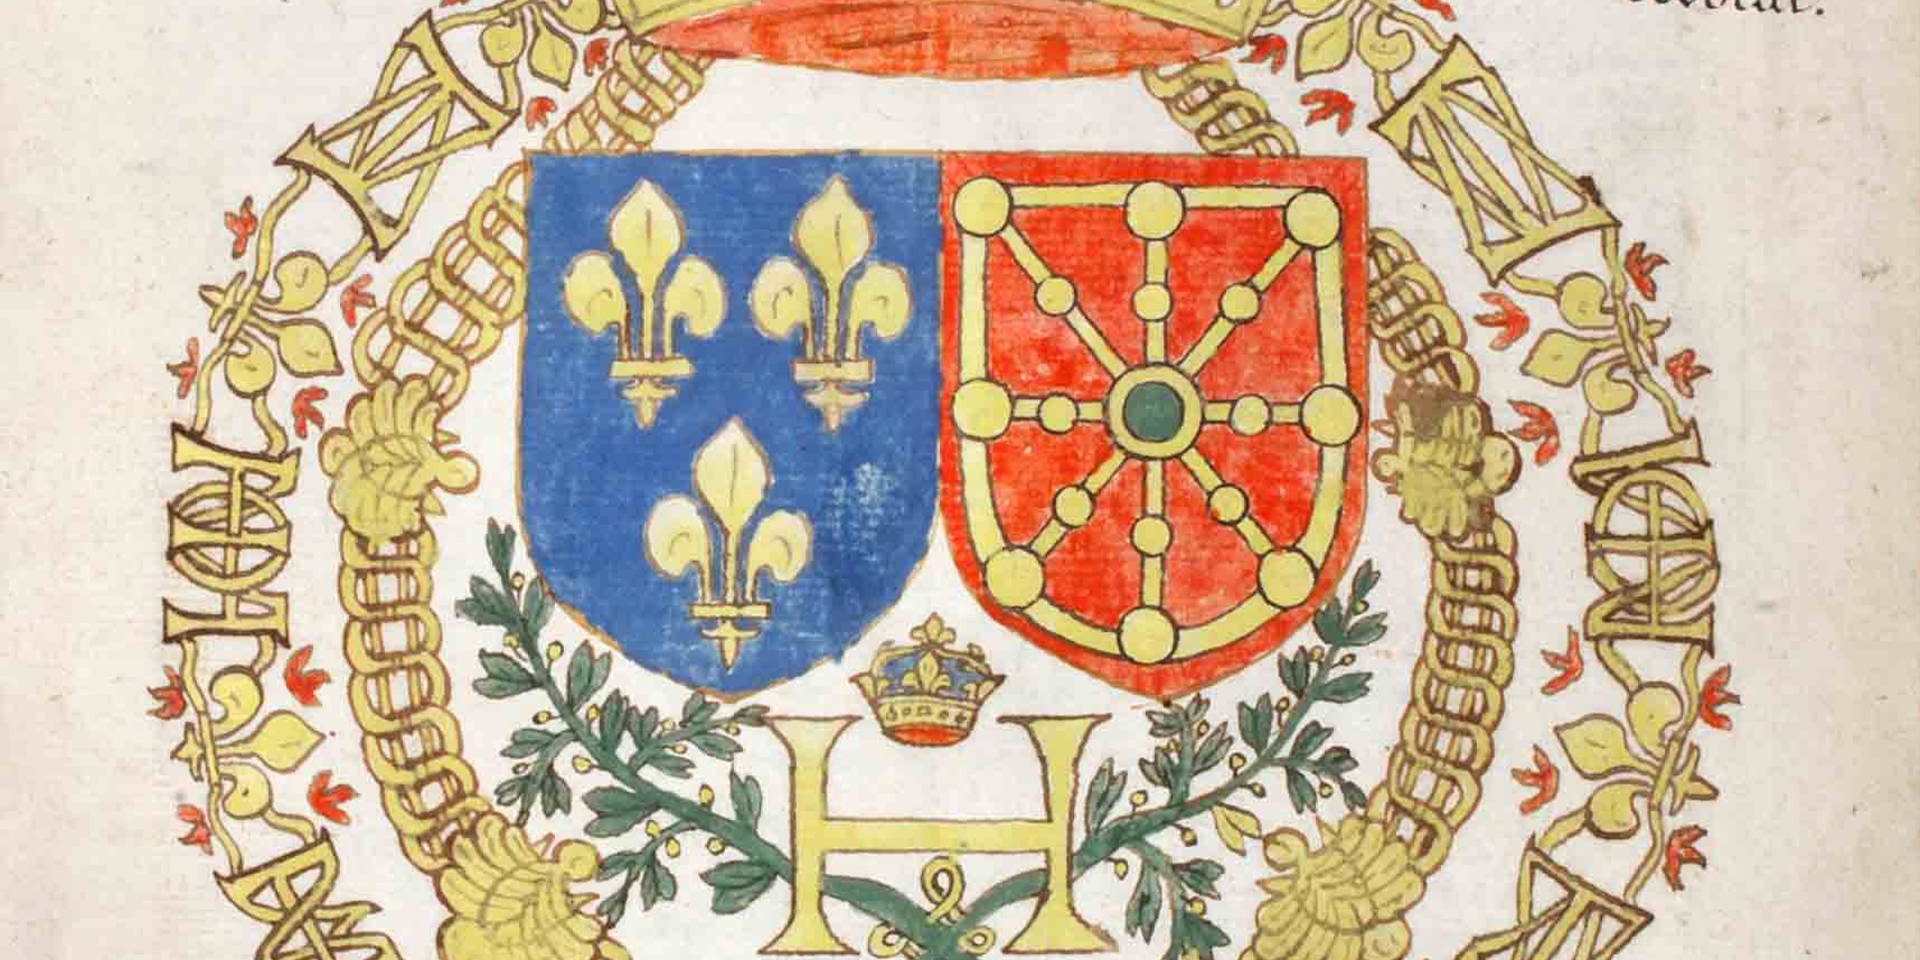 Abrégé de l’histoire du Royaume de Navarre, contenant de roy en roy de qui est advenu de remarquable dès son origine avec leurs armoiries